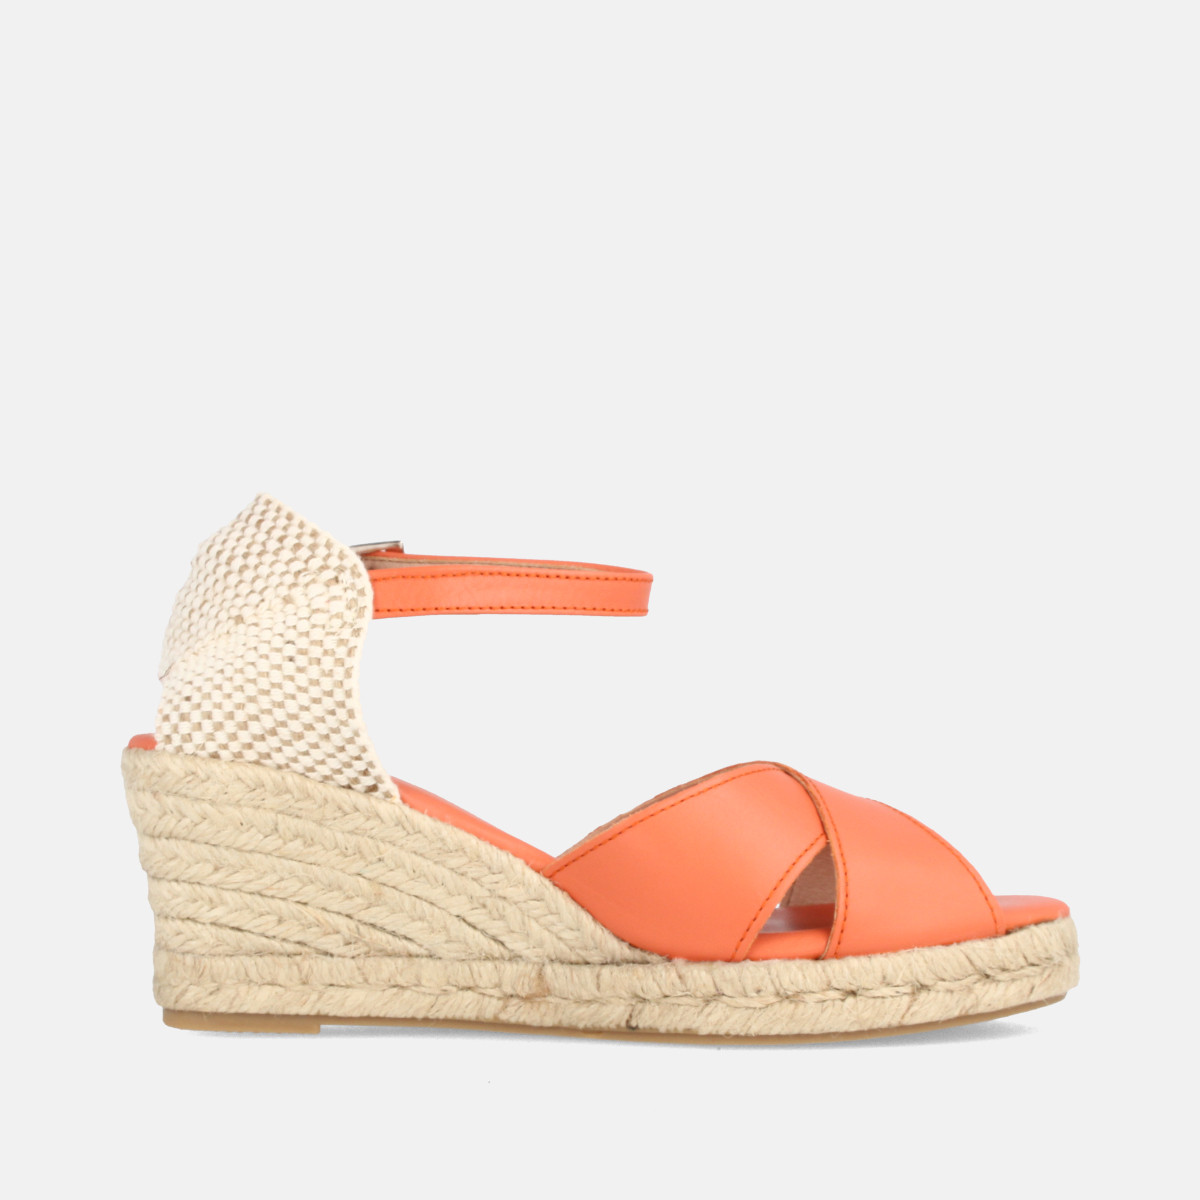 Sandales confortables compensées à bandes croisées - Orange - Marila